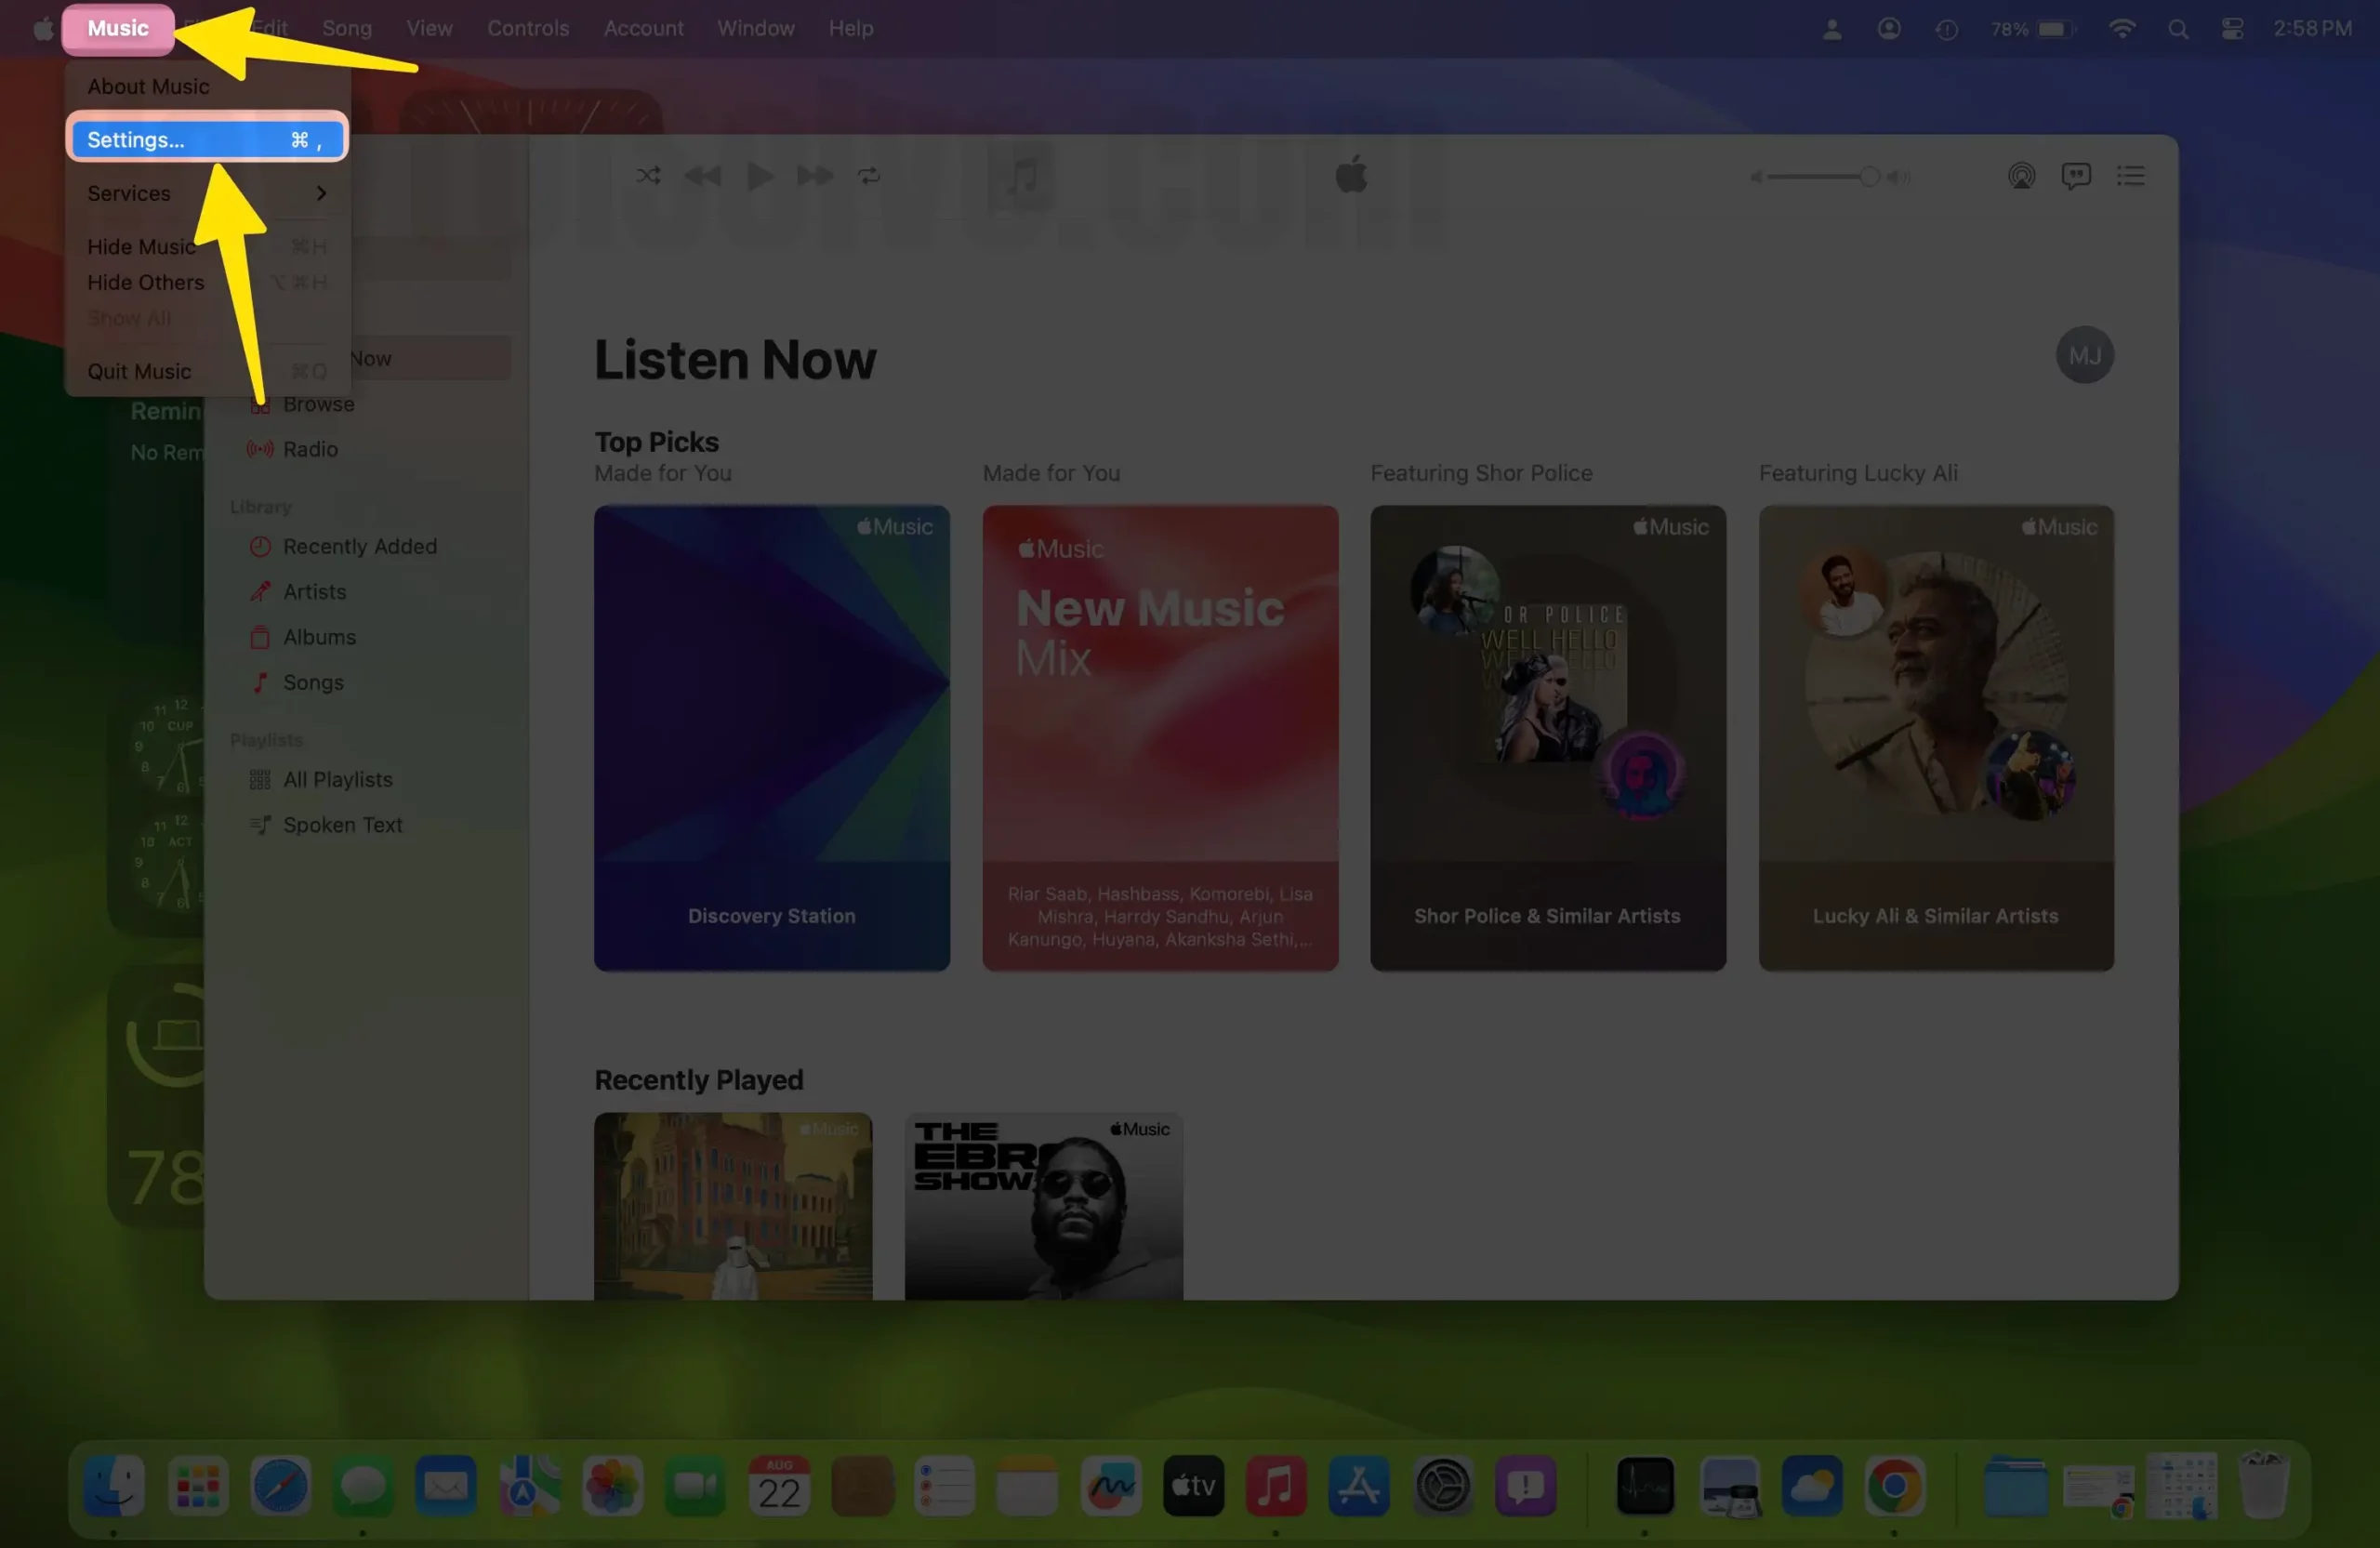 Open Music App Settings on Mac